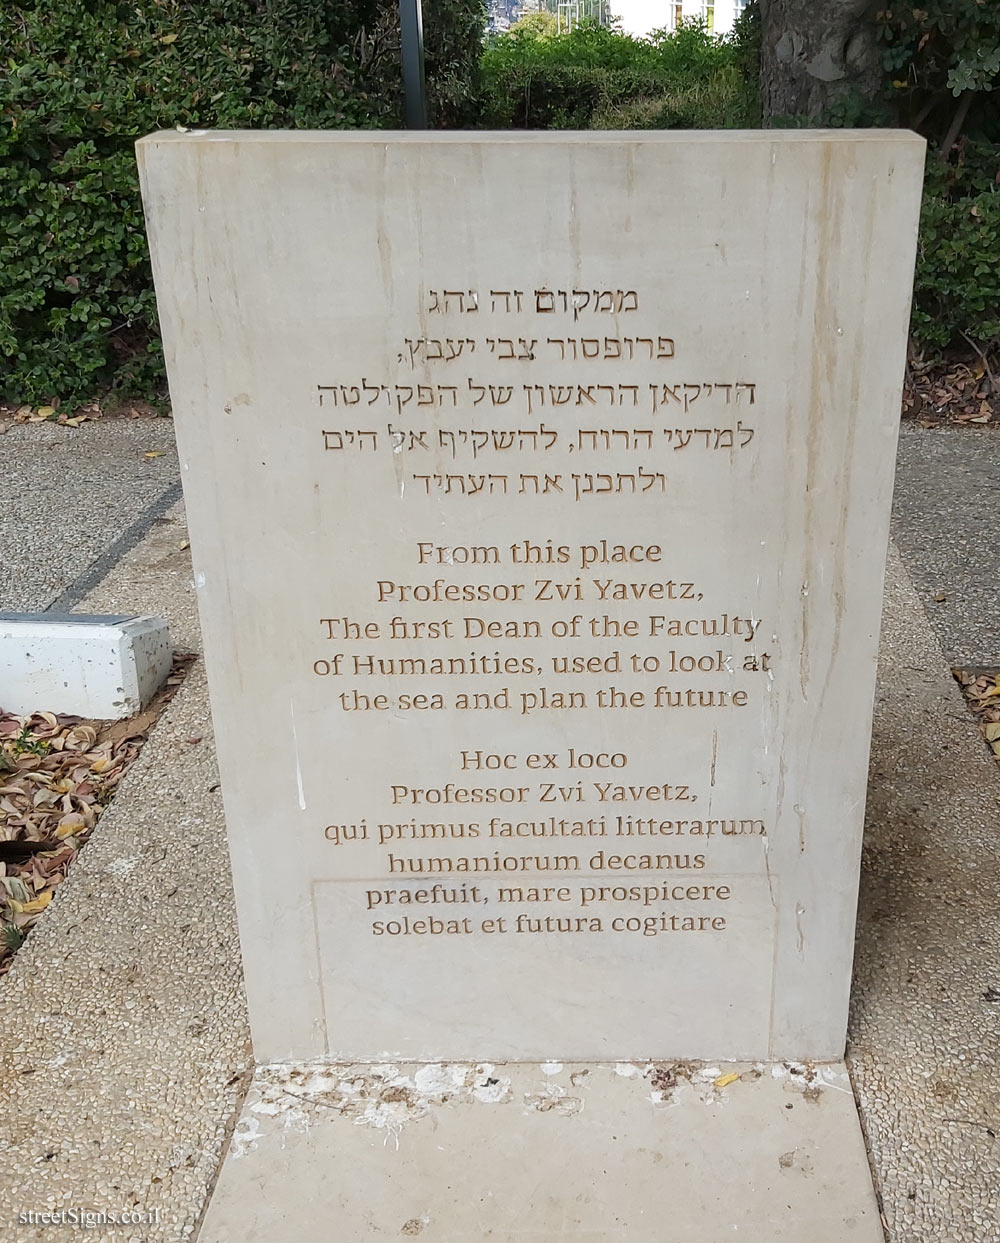 Tel Aviv - "The Bench" - outdoor sculpture by Dani Karavan - Tel Aviv University-Ramat Aviv Campus, Tel Aviv, Israel